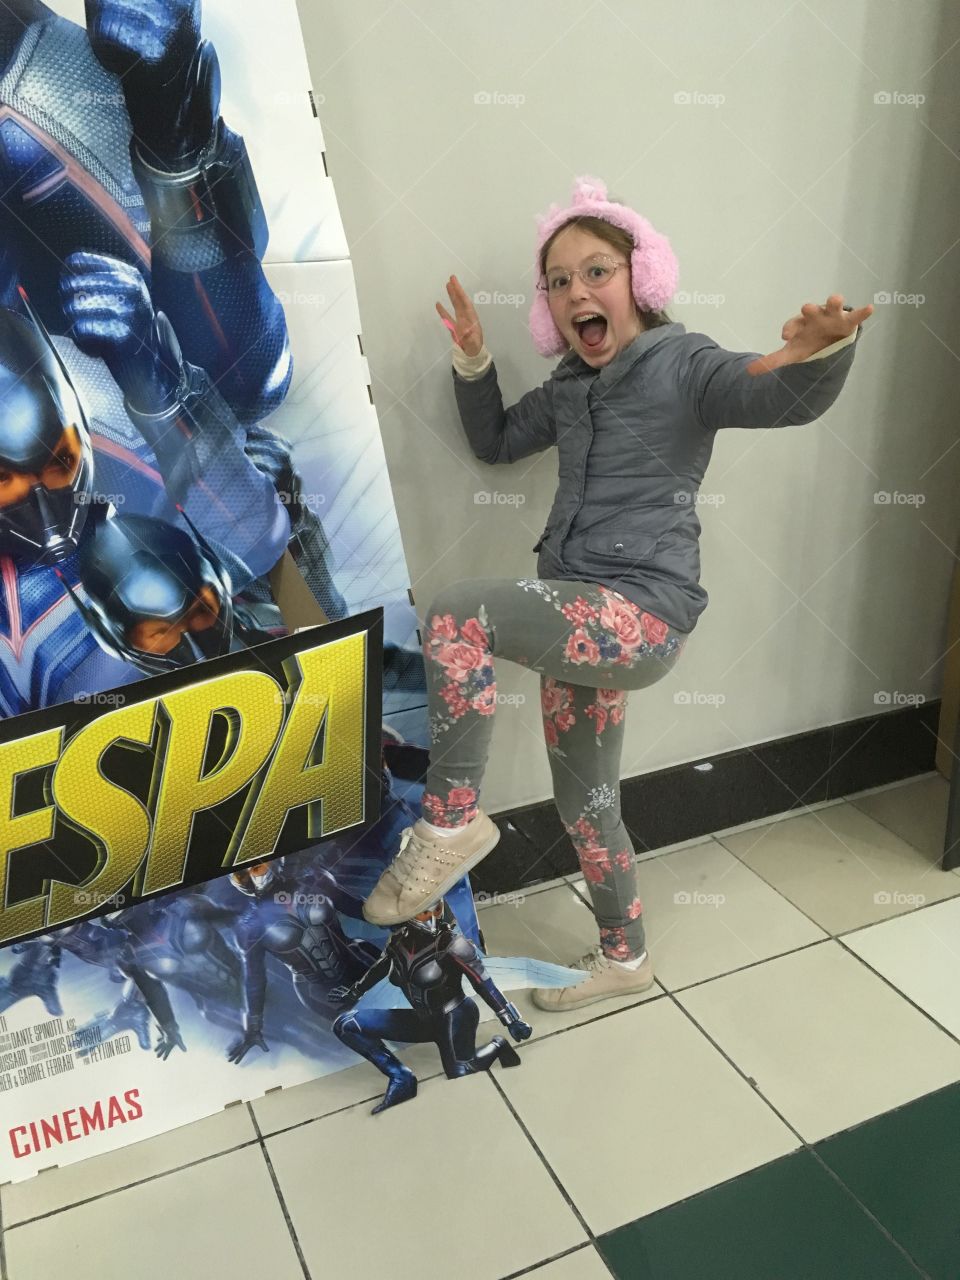 Yeahh - assistimos “Homem-Formiga e a Vespa” no Cinema, muito legal. Minha filha se divertiu!